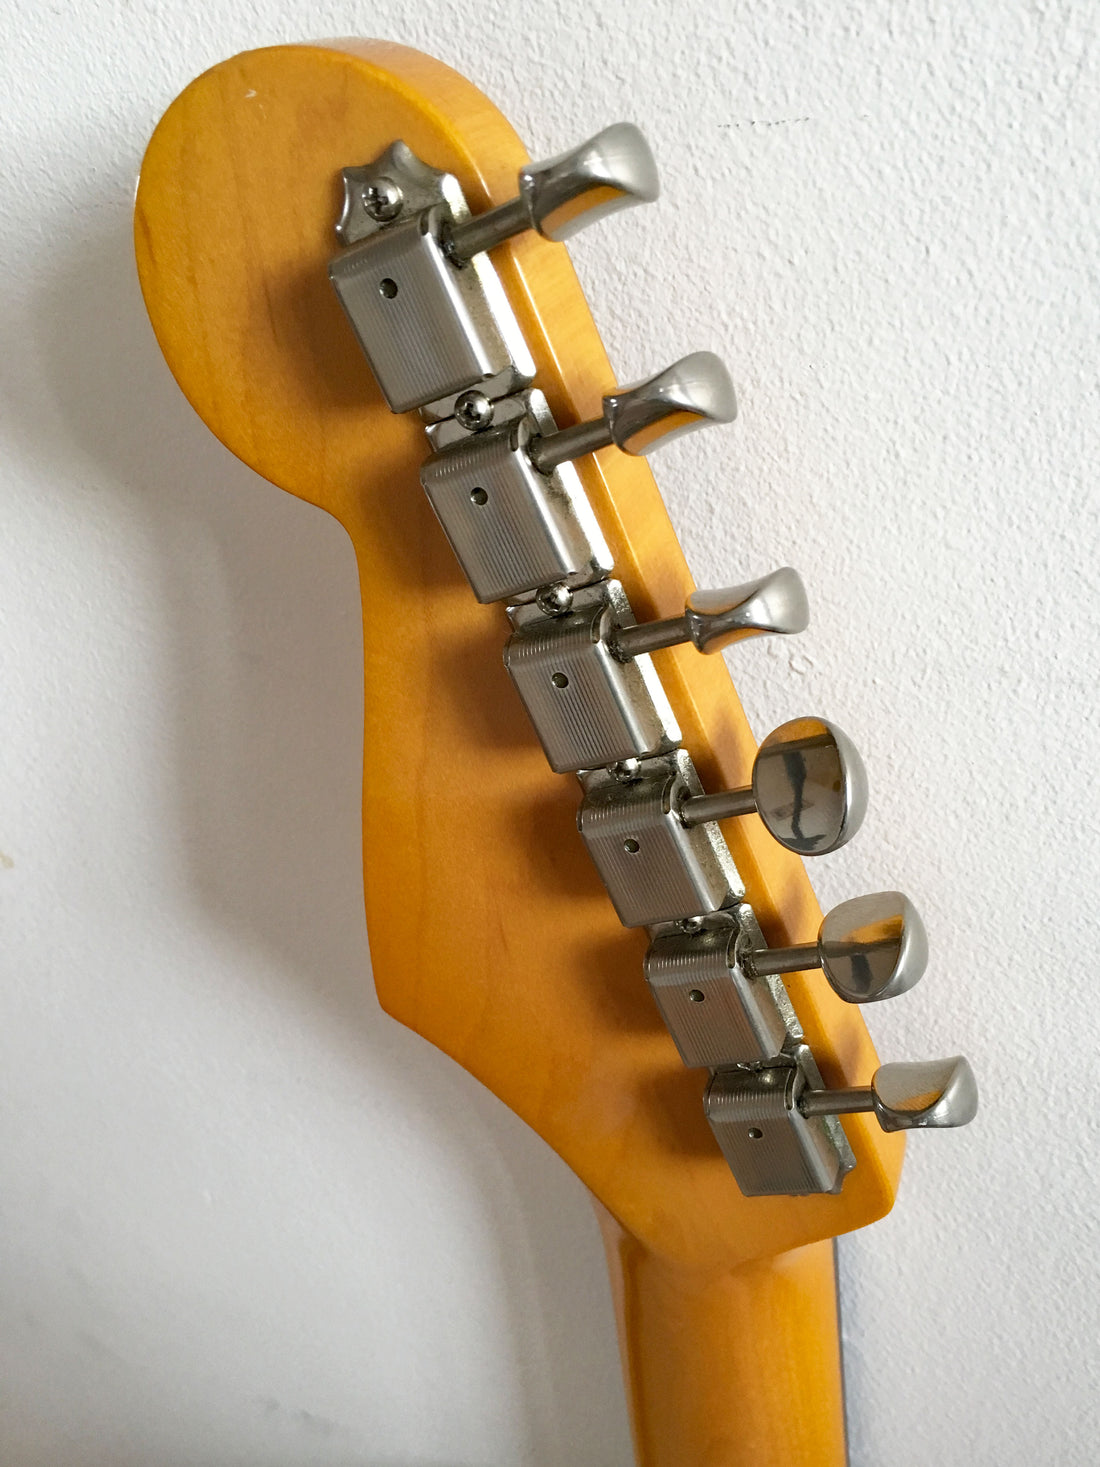 Used Fender Stratocaster '62 Reissue Vintage White